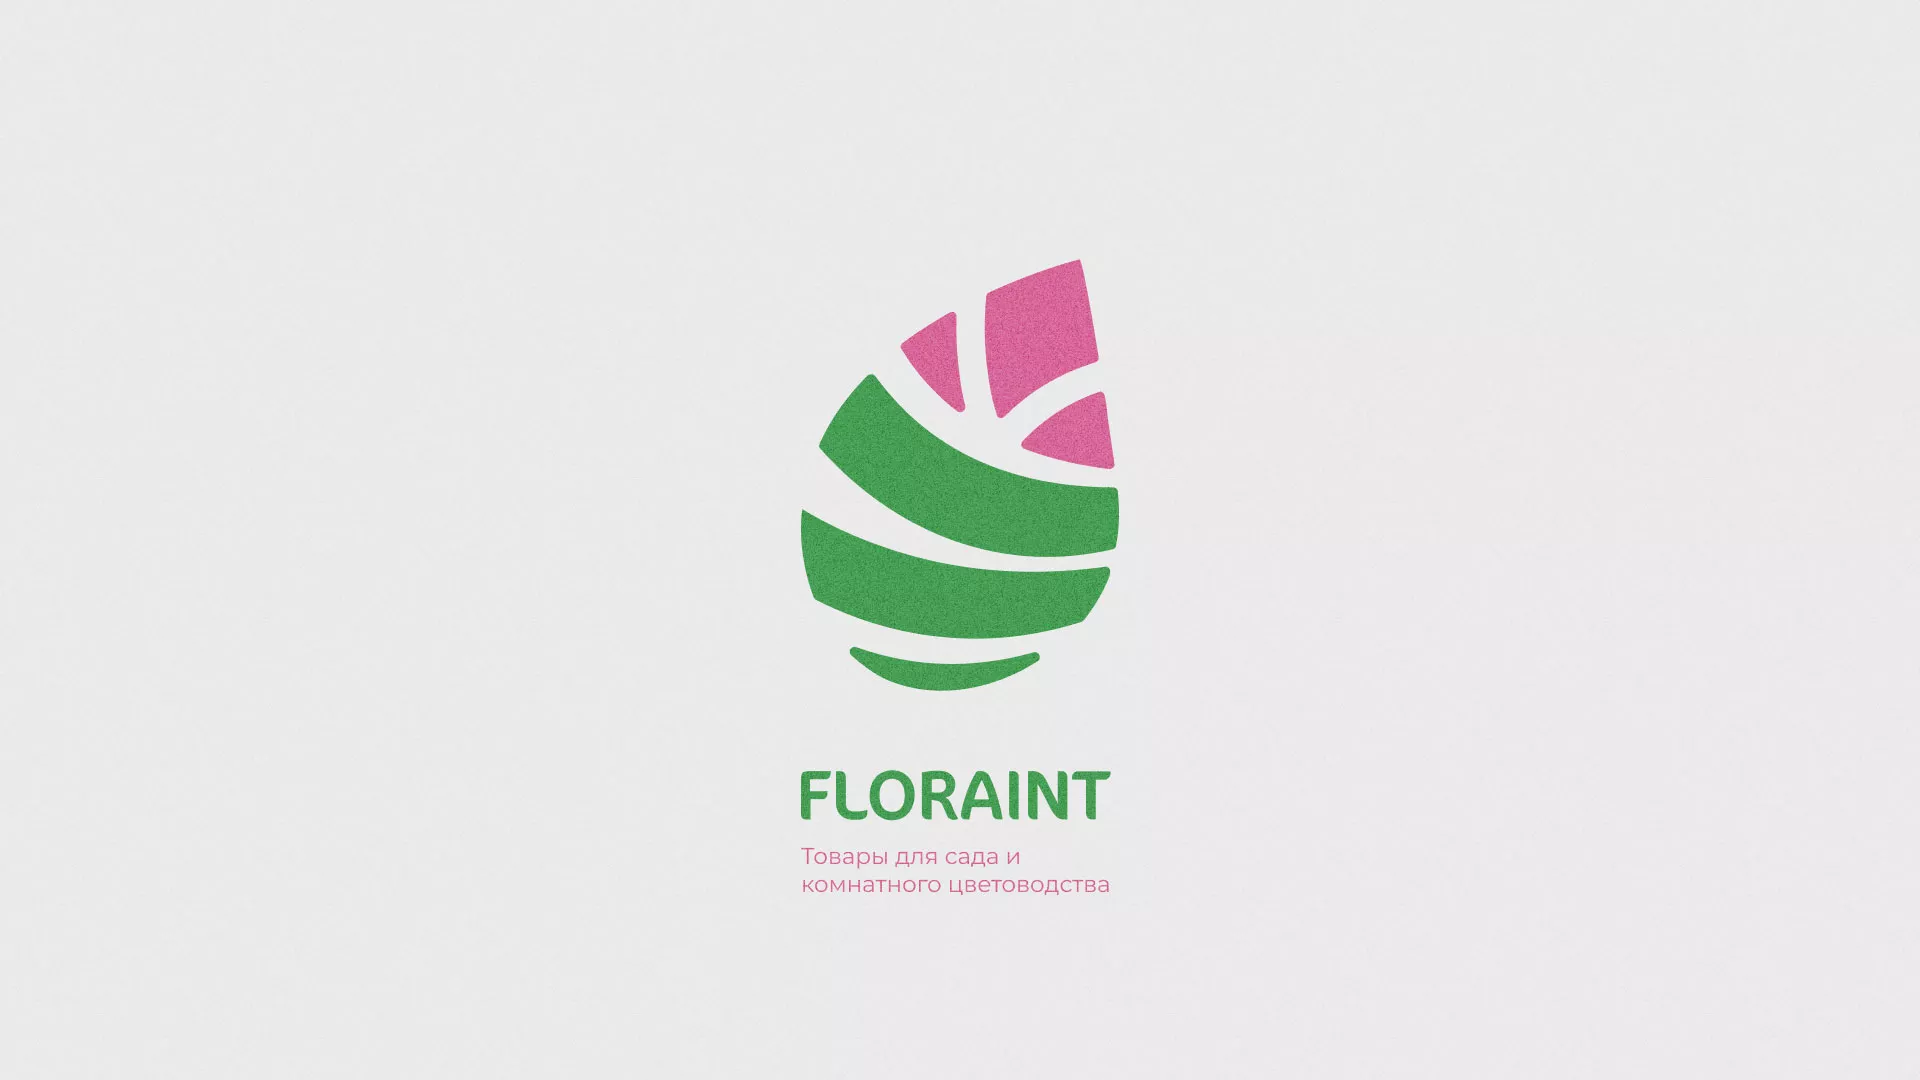 Разработка оформления профиля Instagram для магазина «Floraint» в Сочи